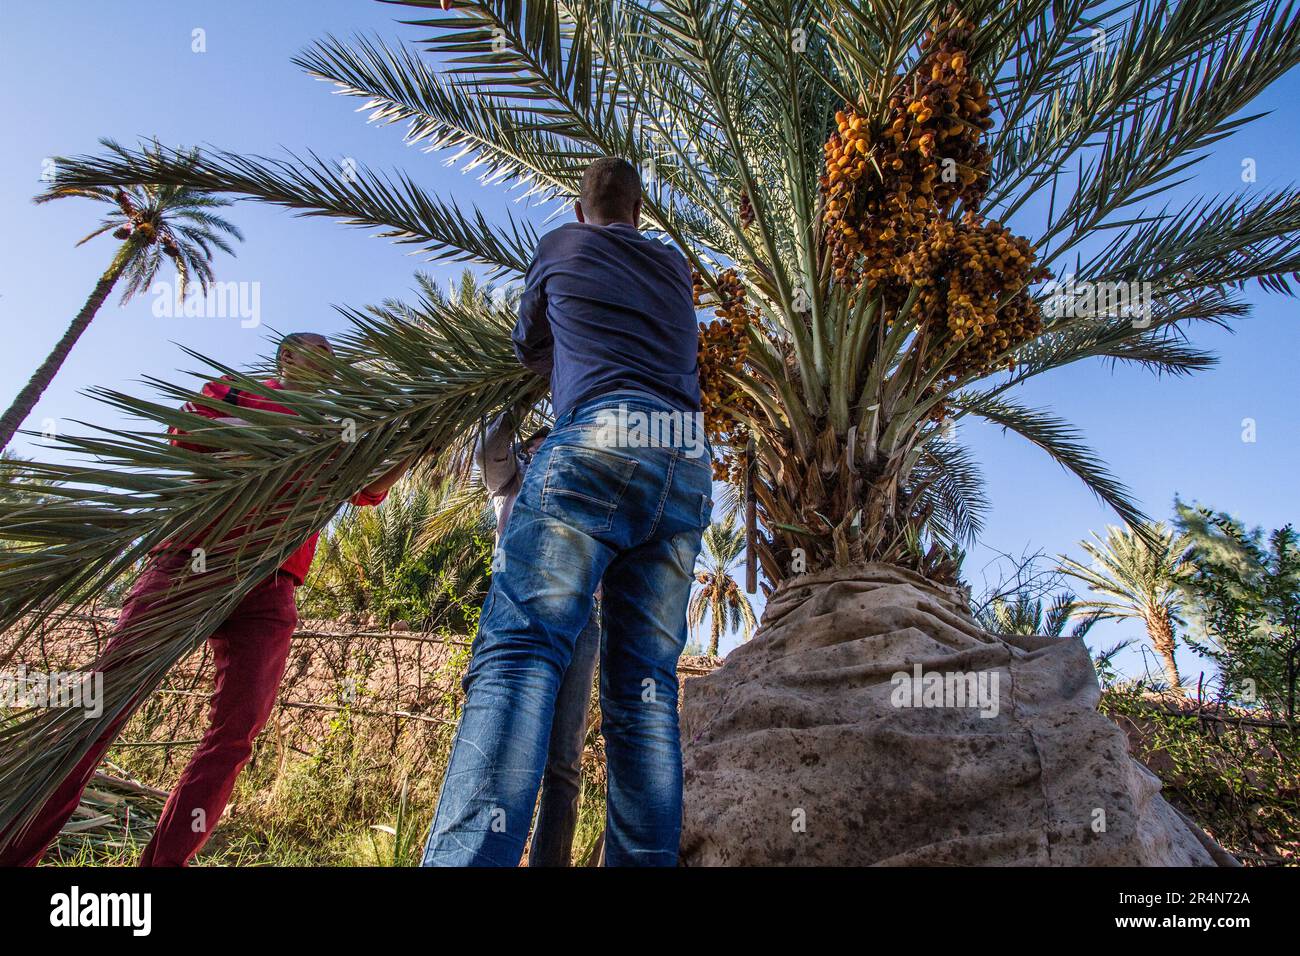 Raccolta di palme da datto da una famiglia agricola marocchina nella zona di Agdz, Marocco Foto Stock